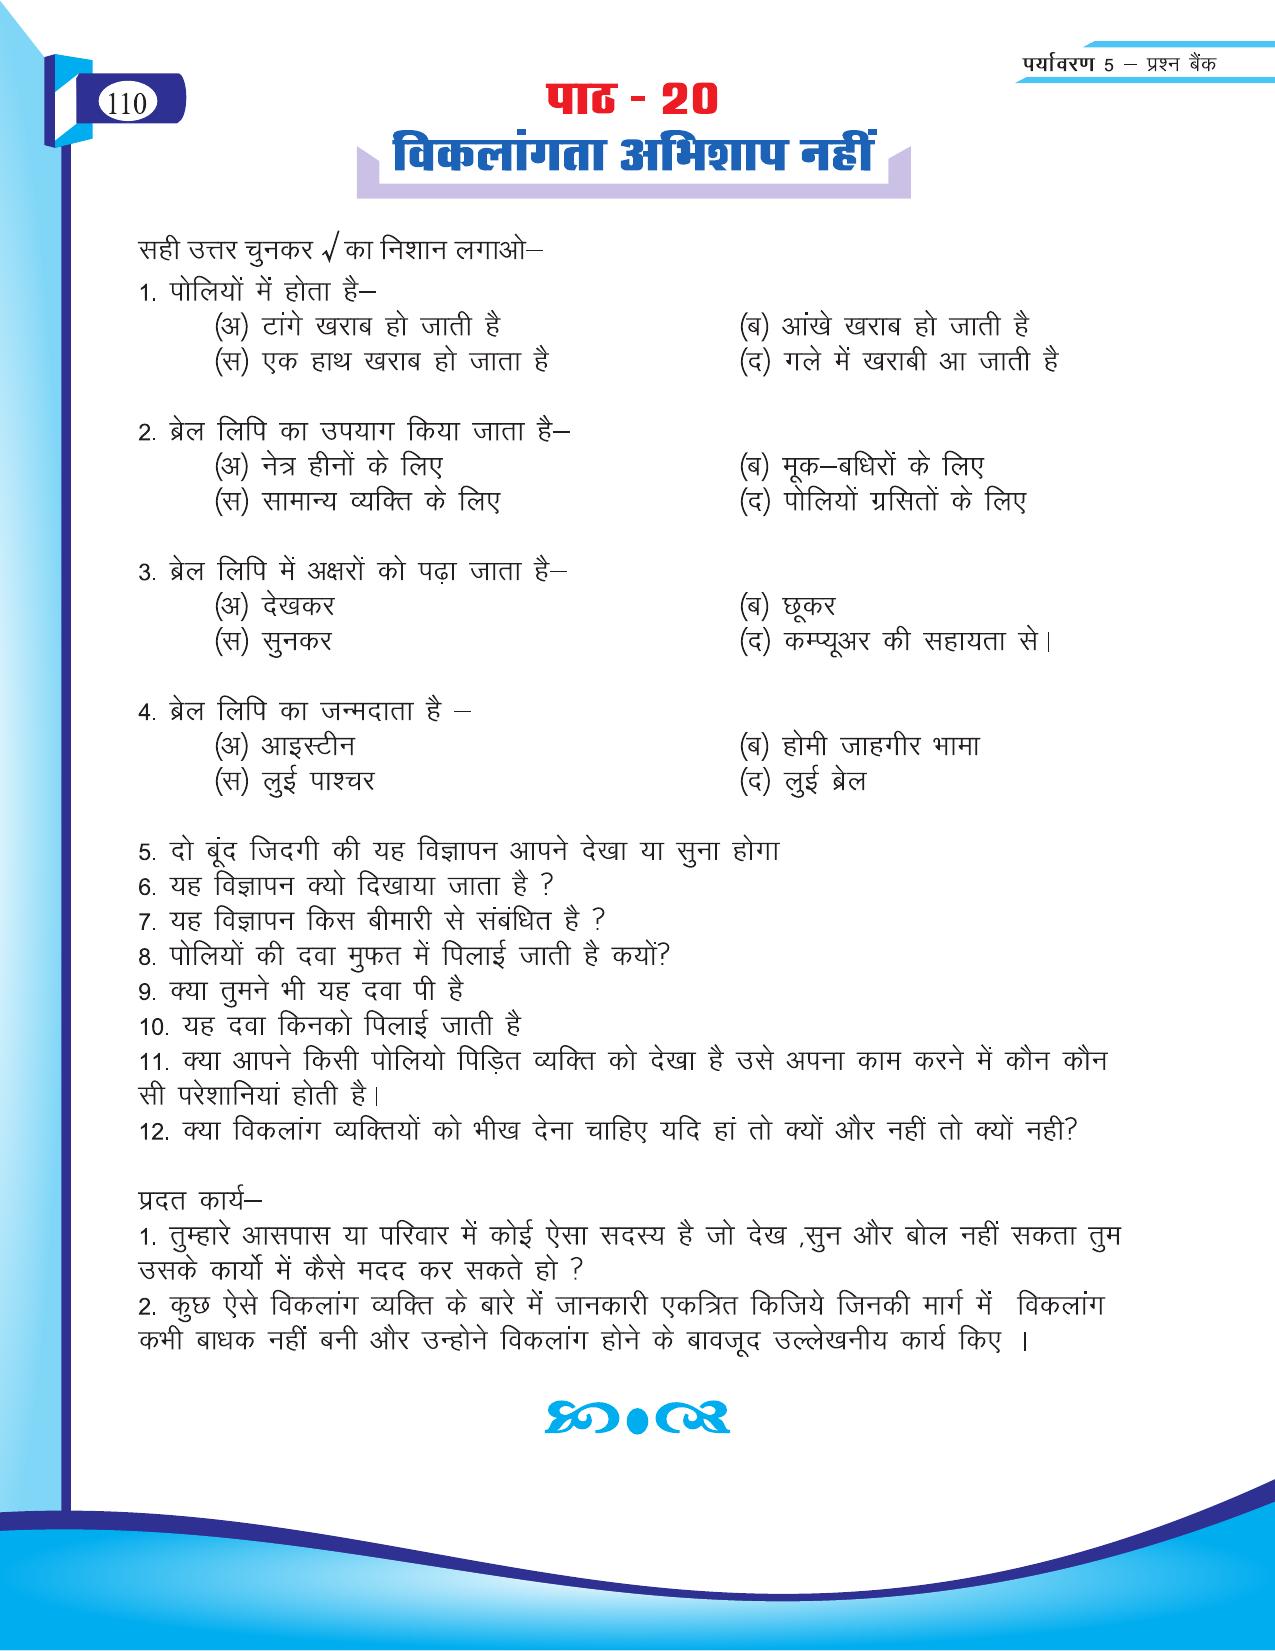 Chhattisgarh Board Class 5 EVS Question Bank 2015-16 - Page 36